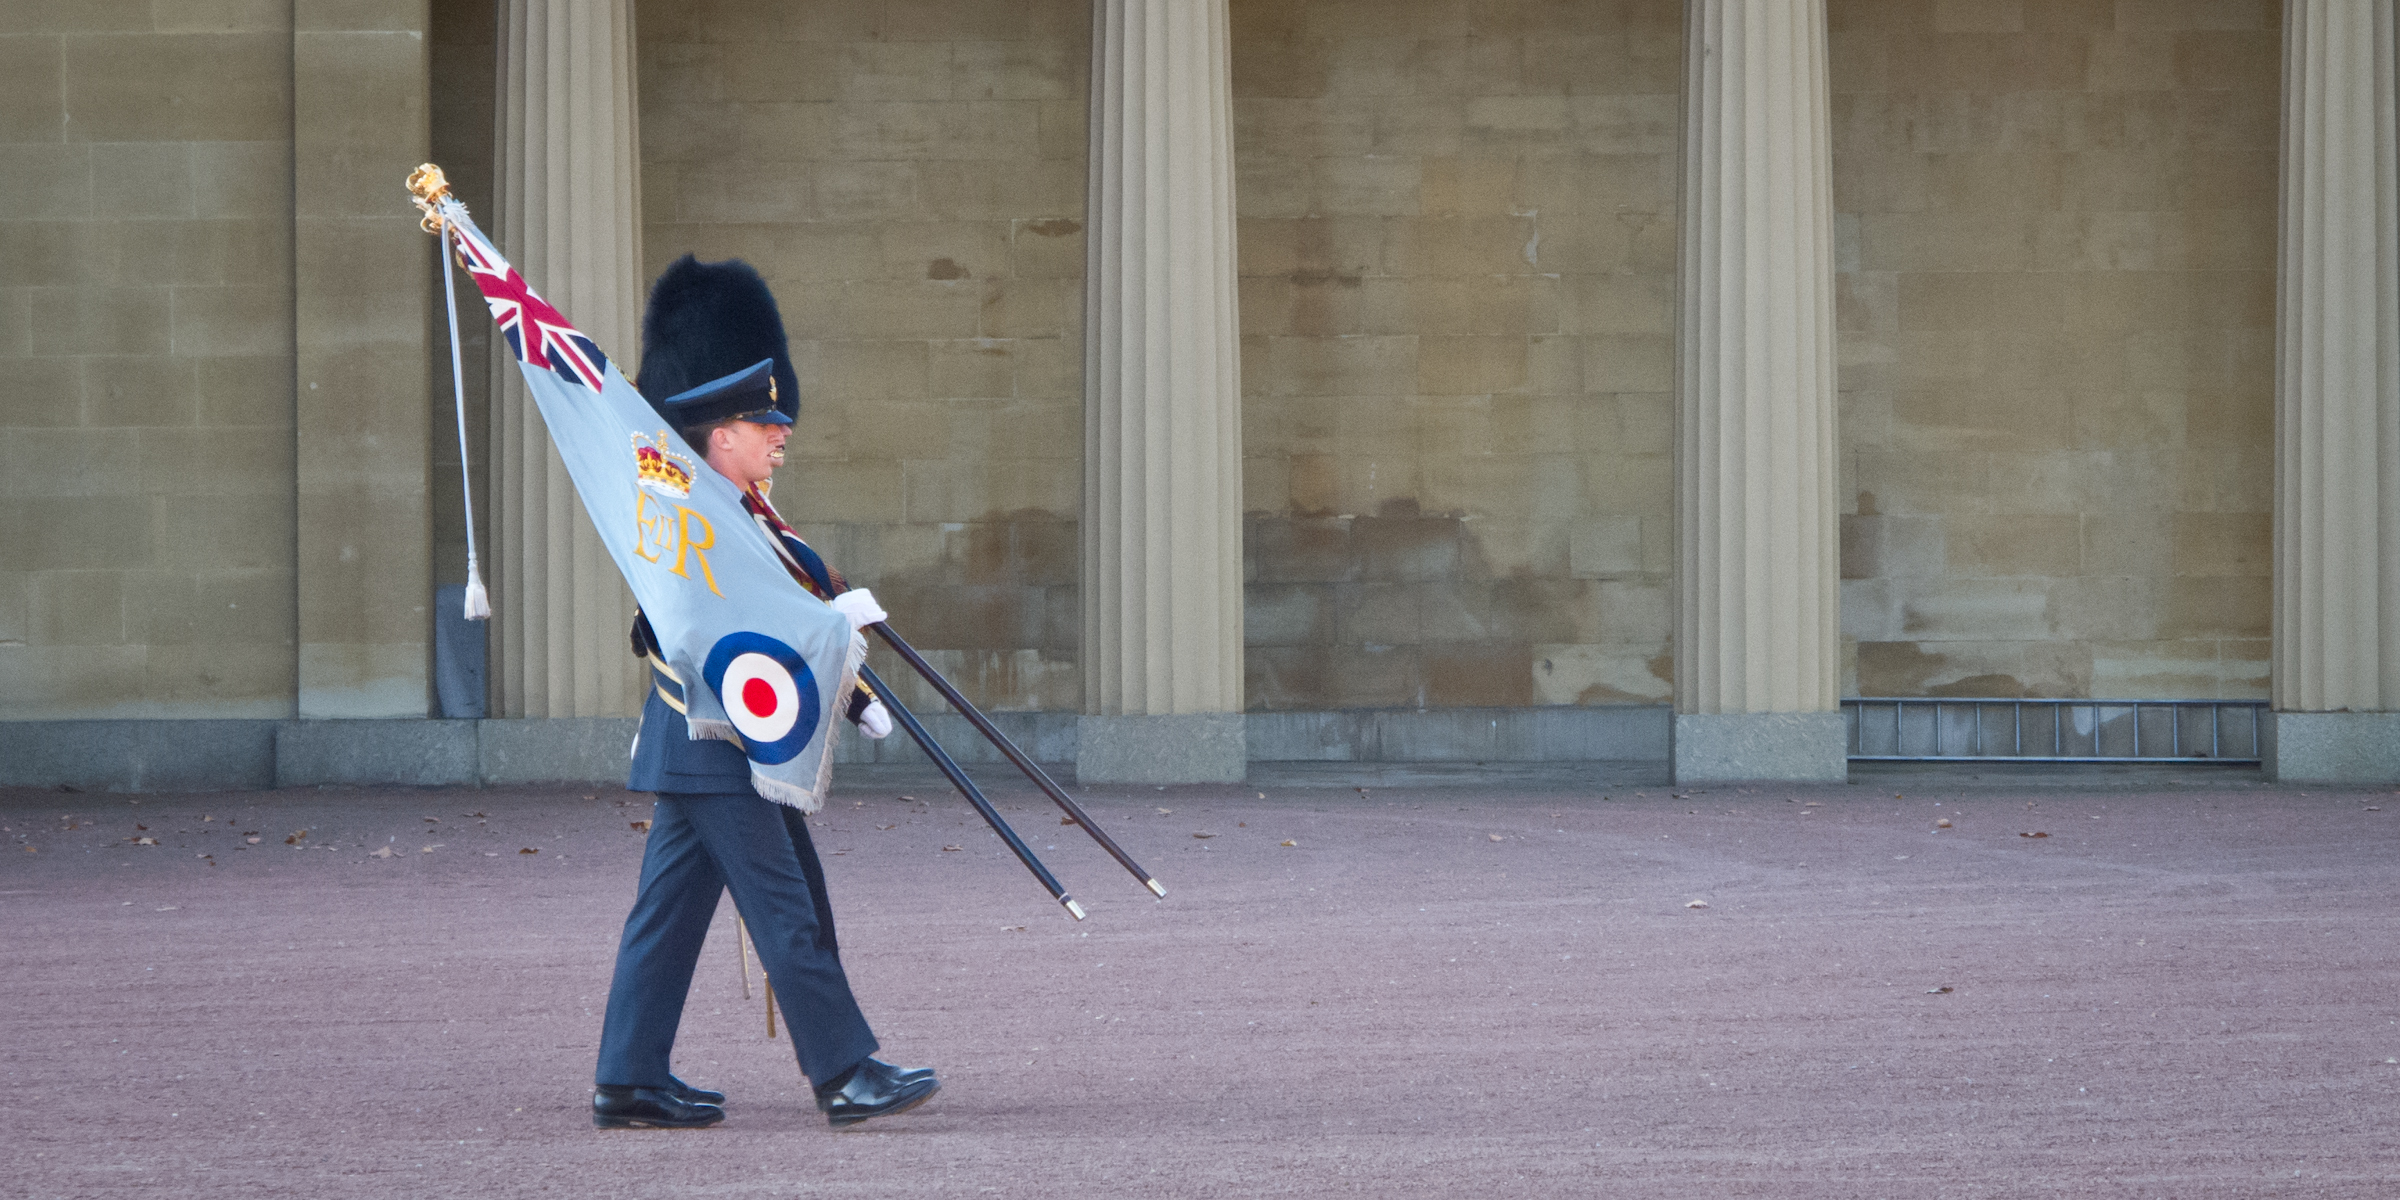 Guard of Buckingham Palace - 02